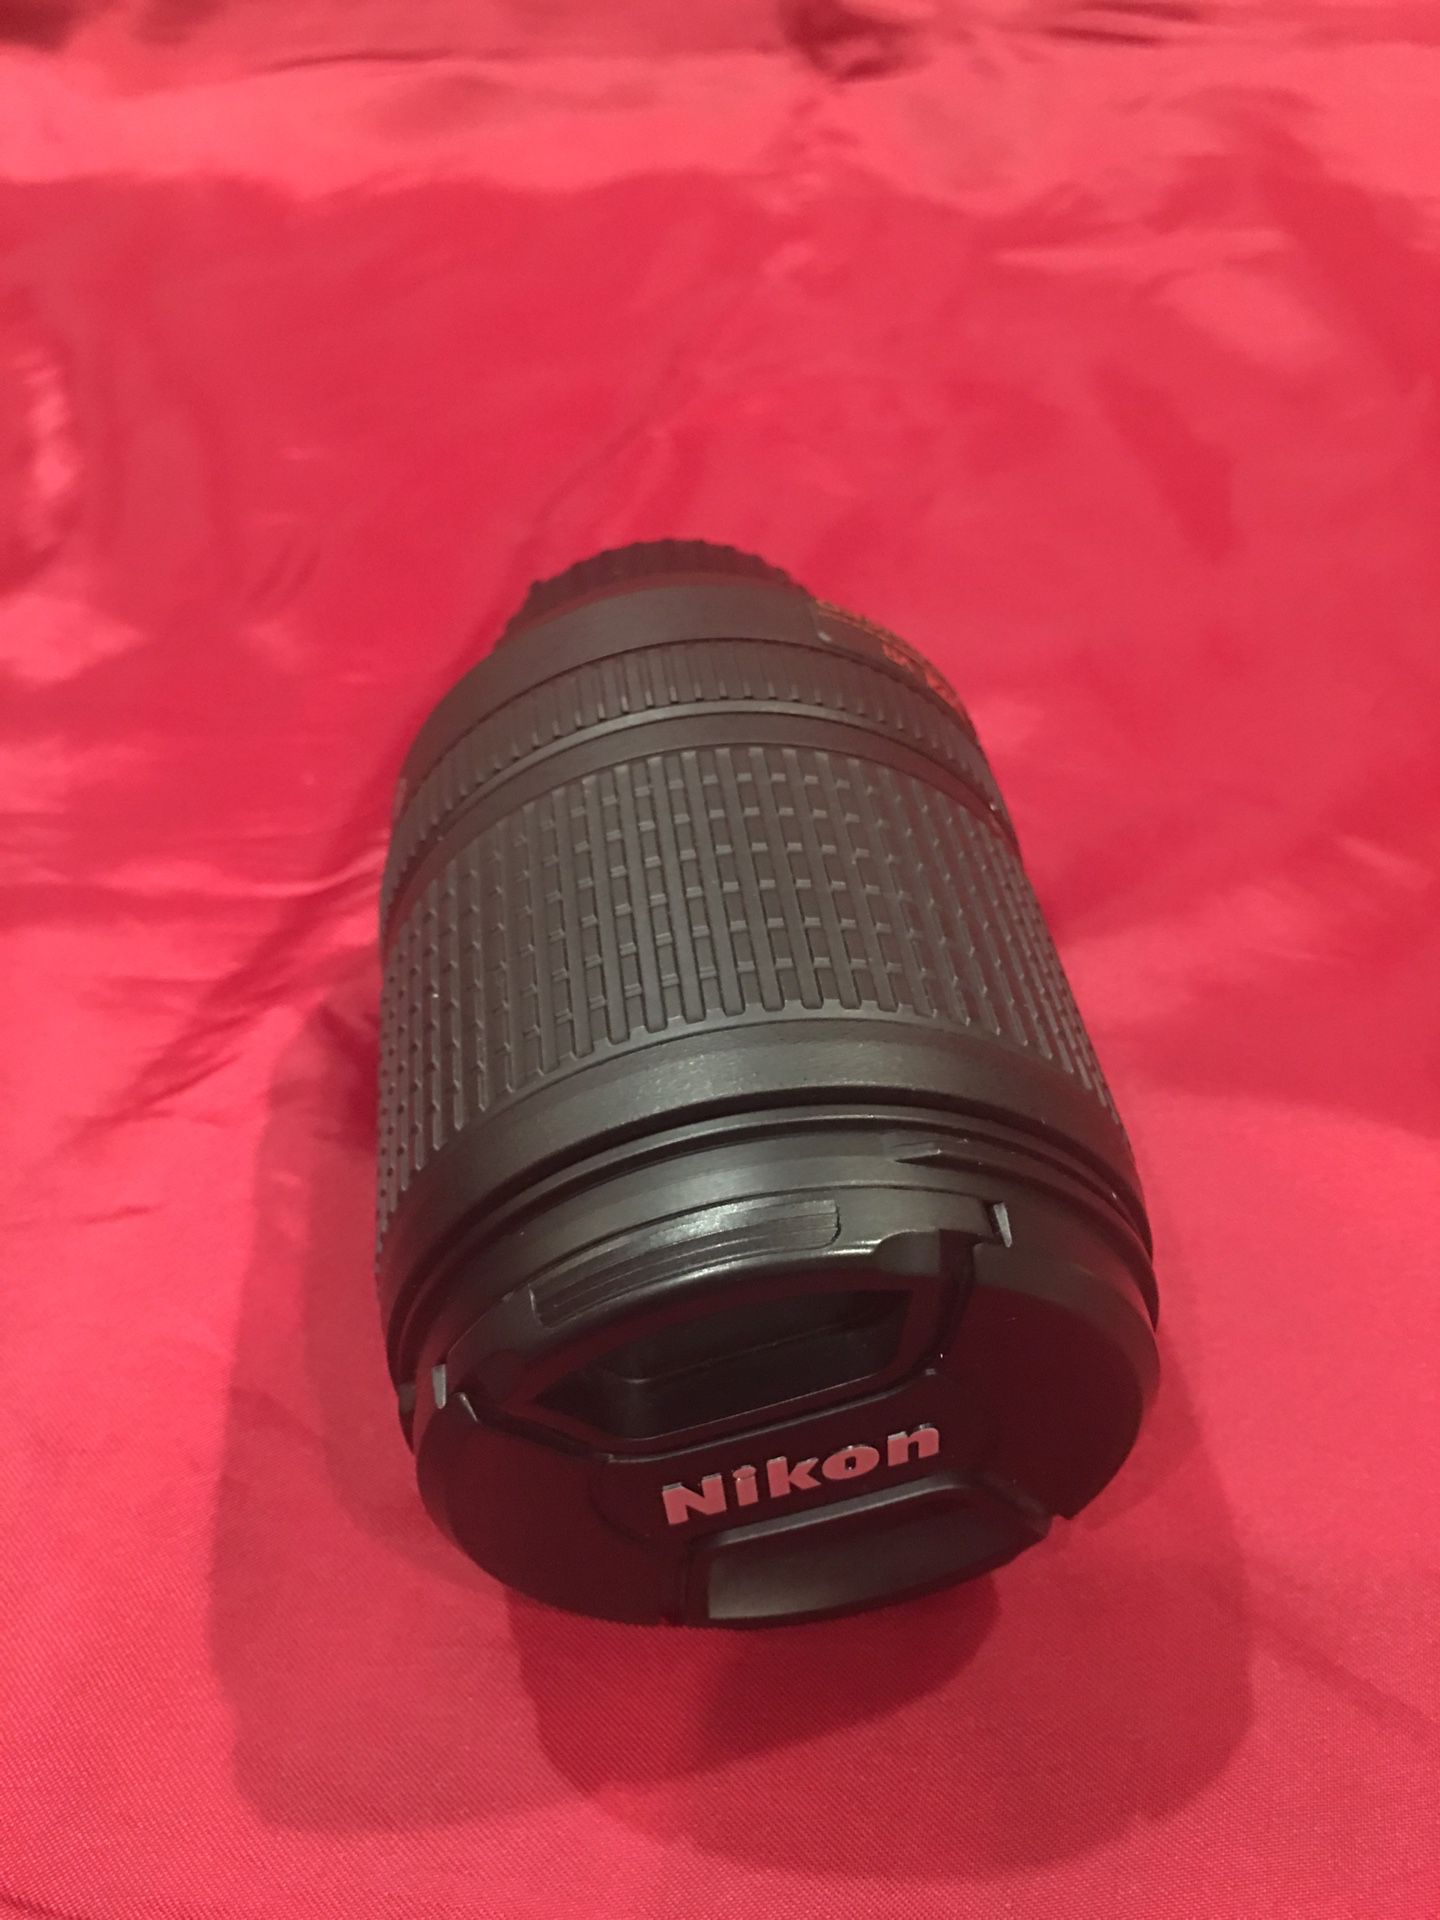 Nikon - AF-S DX NIKKOR 18-140mm f/3.5-5.6G ED VR Zoom Lens for Select Nikon DX-Format Digital Cameras - Black